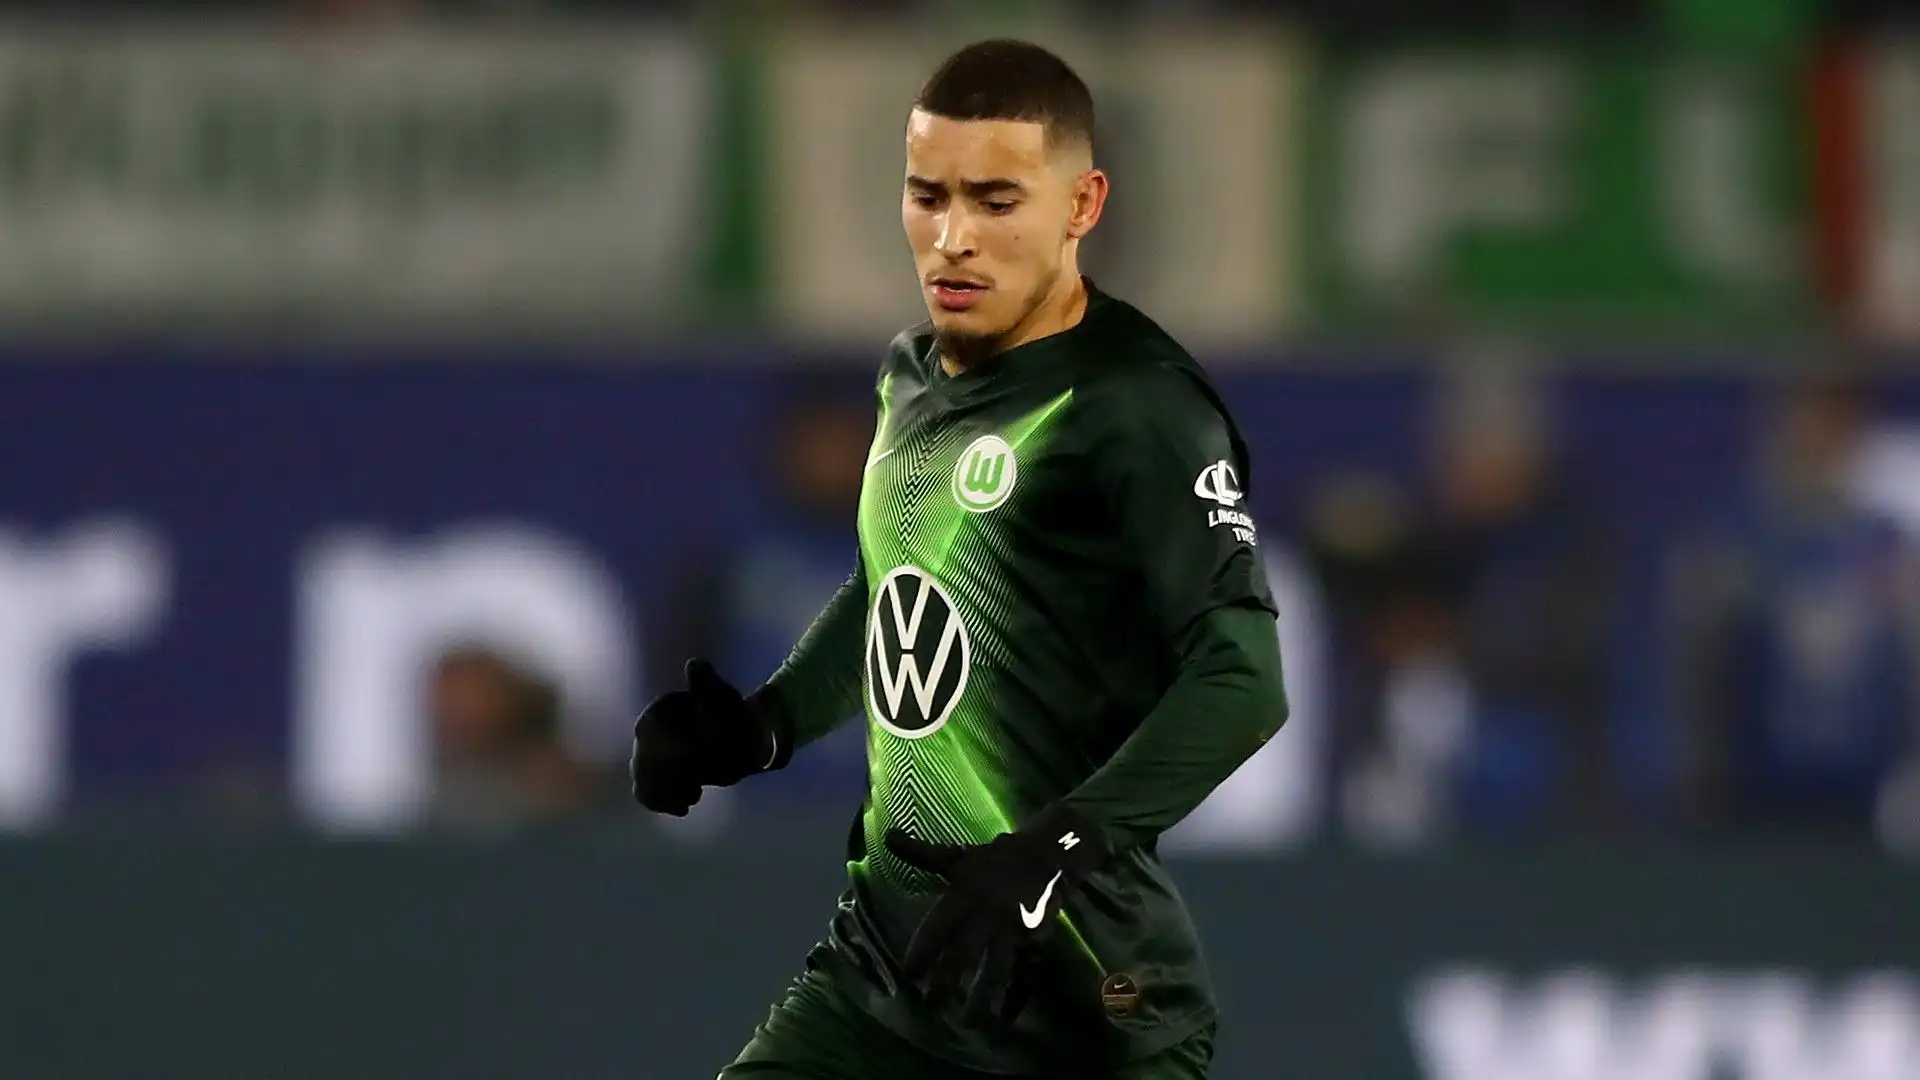 7- William 
Ruolo: Difensore
Ultima squadra: Wolfsburg
Valore di mercato: 2 milioni di euro